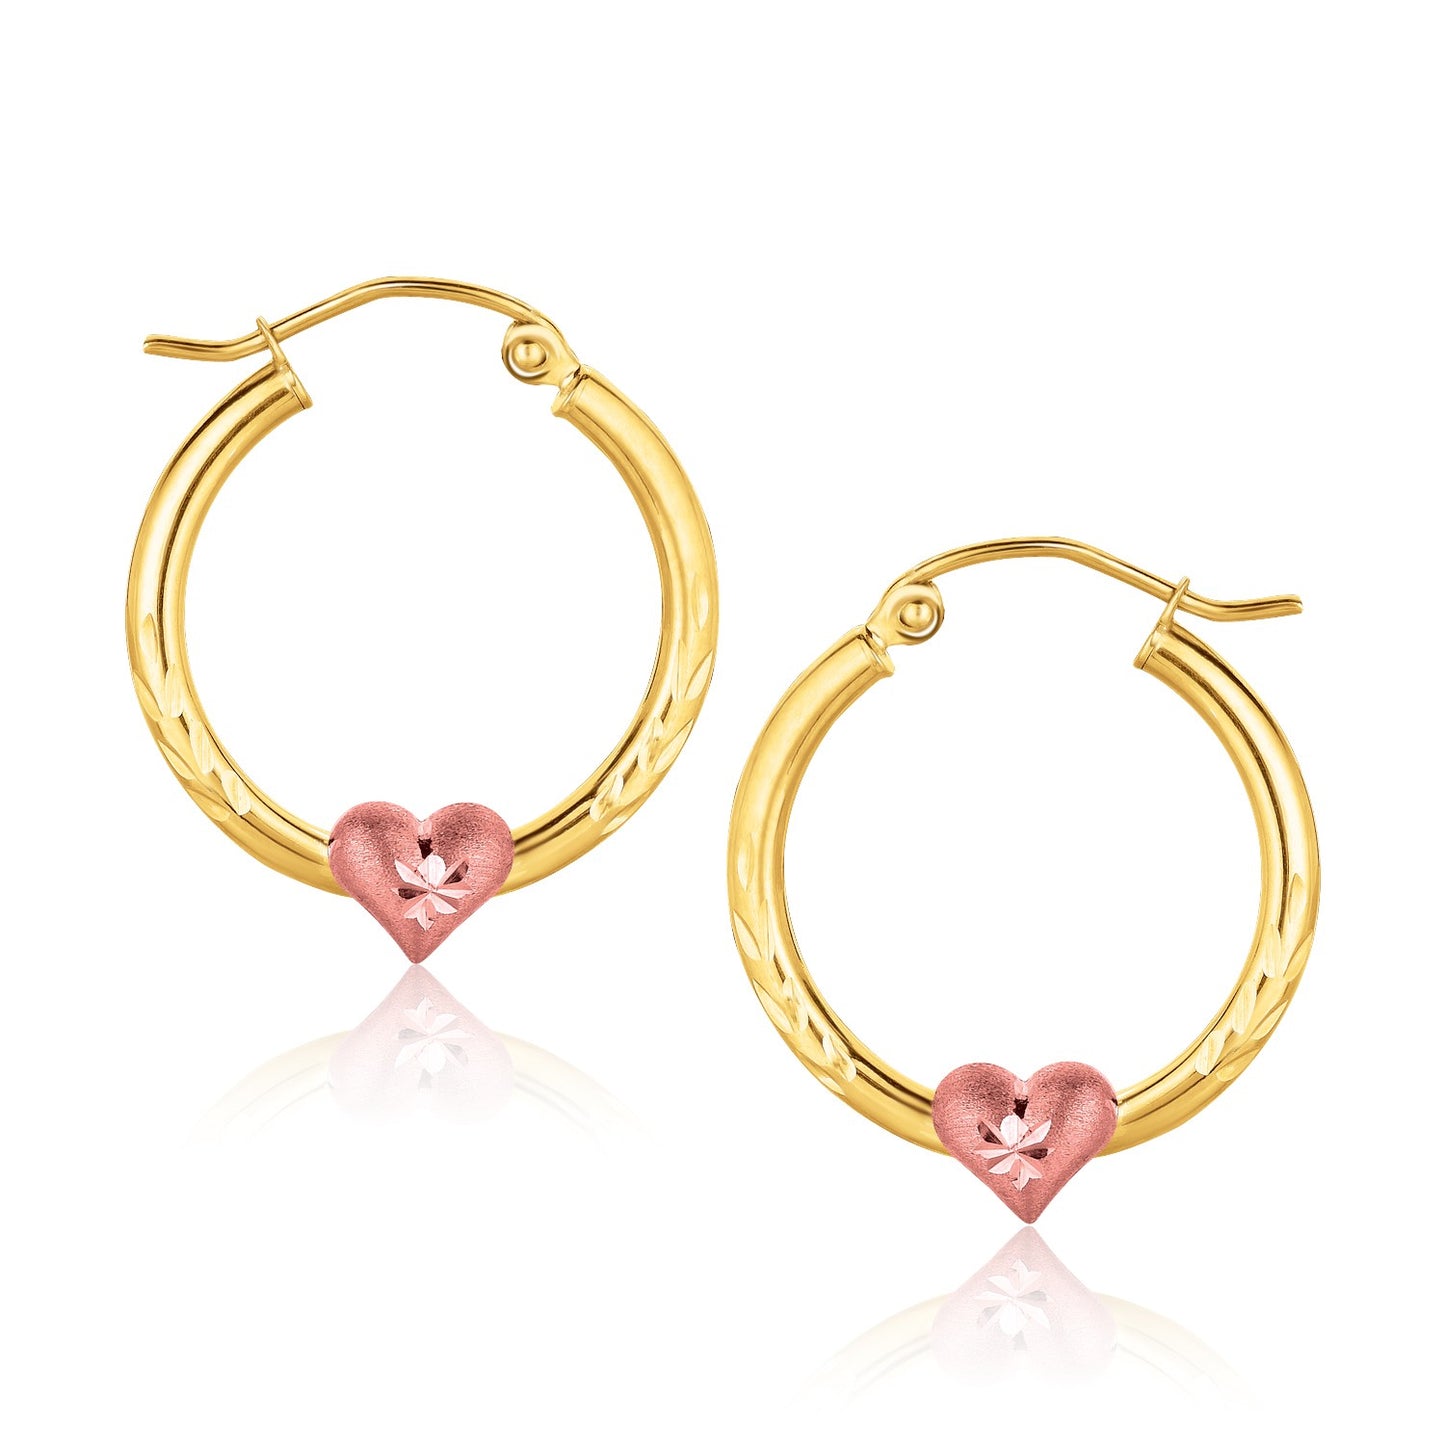 10K Two-Tone Gold Hoop Earrings with Heart Motif